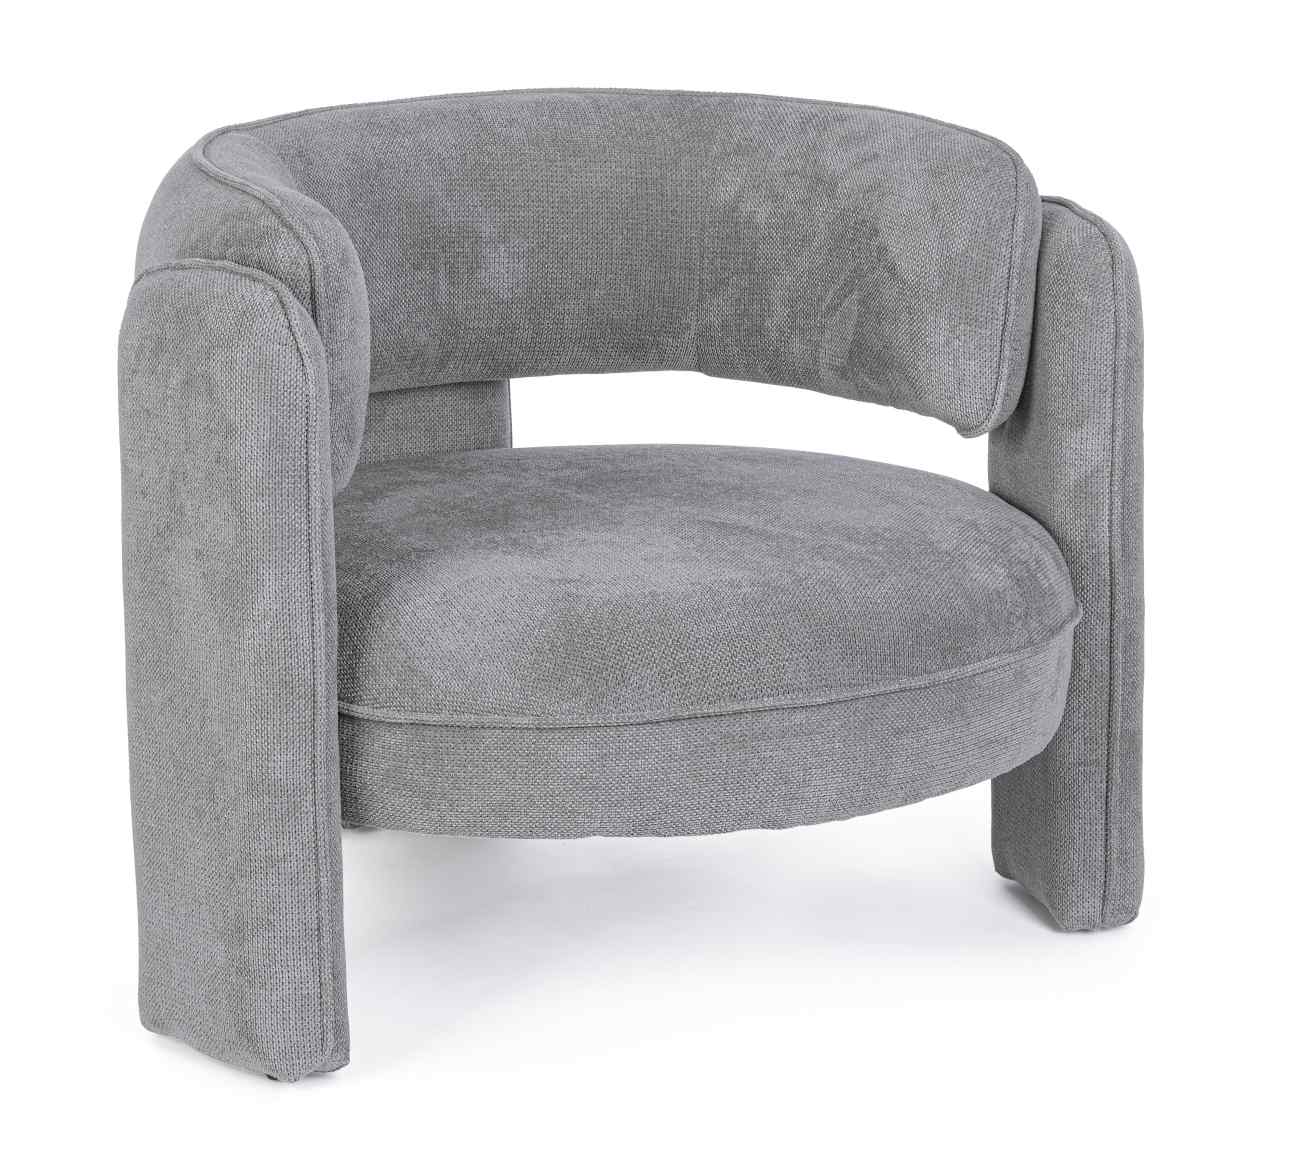 Der Sessel Aisha überzeugt mit seinem modernen Stil. Gefertigt wurde er aus Stoff, welcher einen grauen Farbton besitzt. Der Sessel besitzt eine Sitzhöhe von 44 cm.